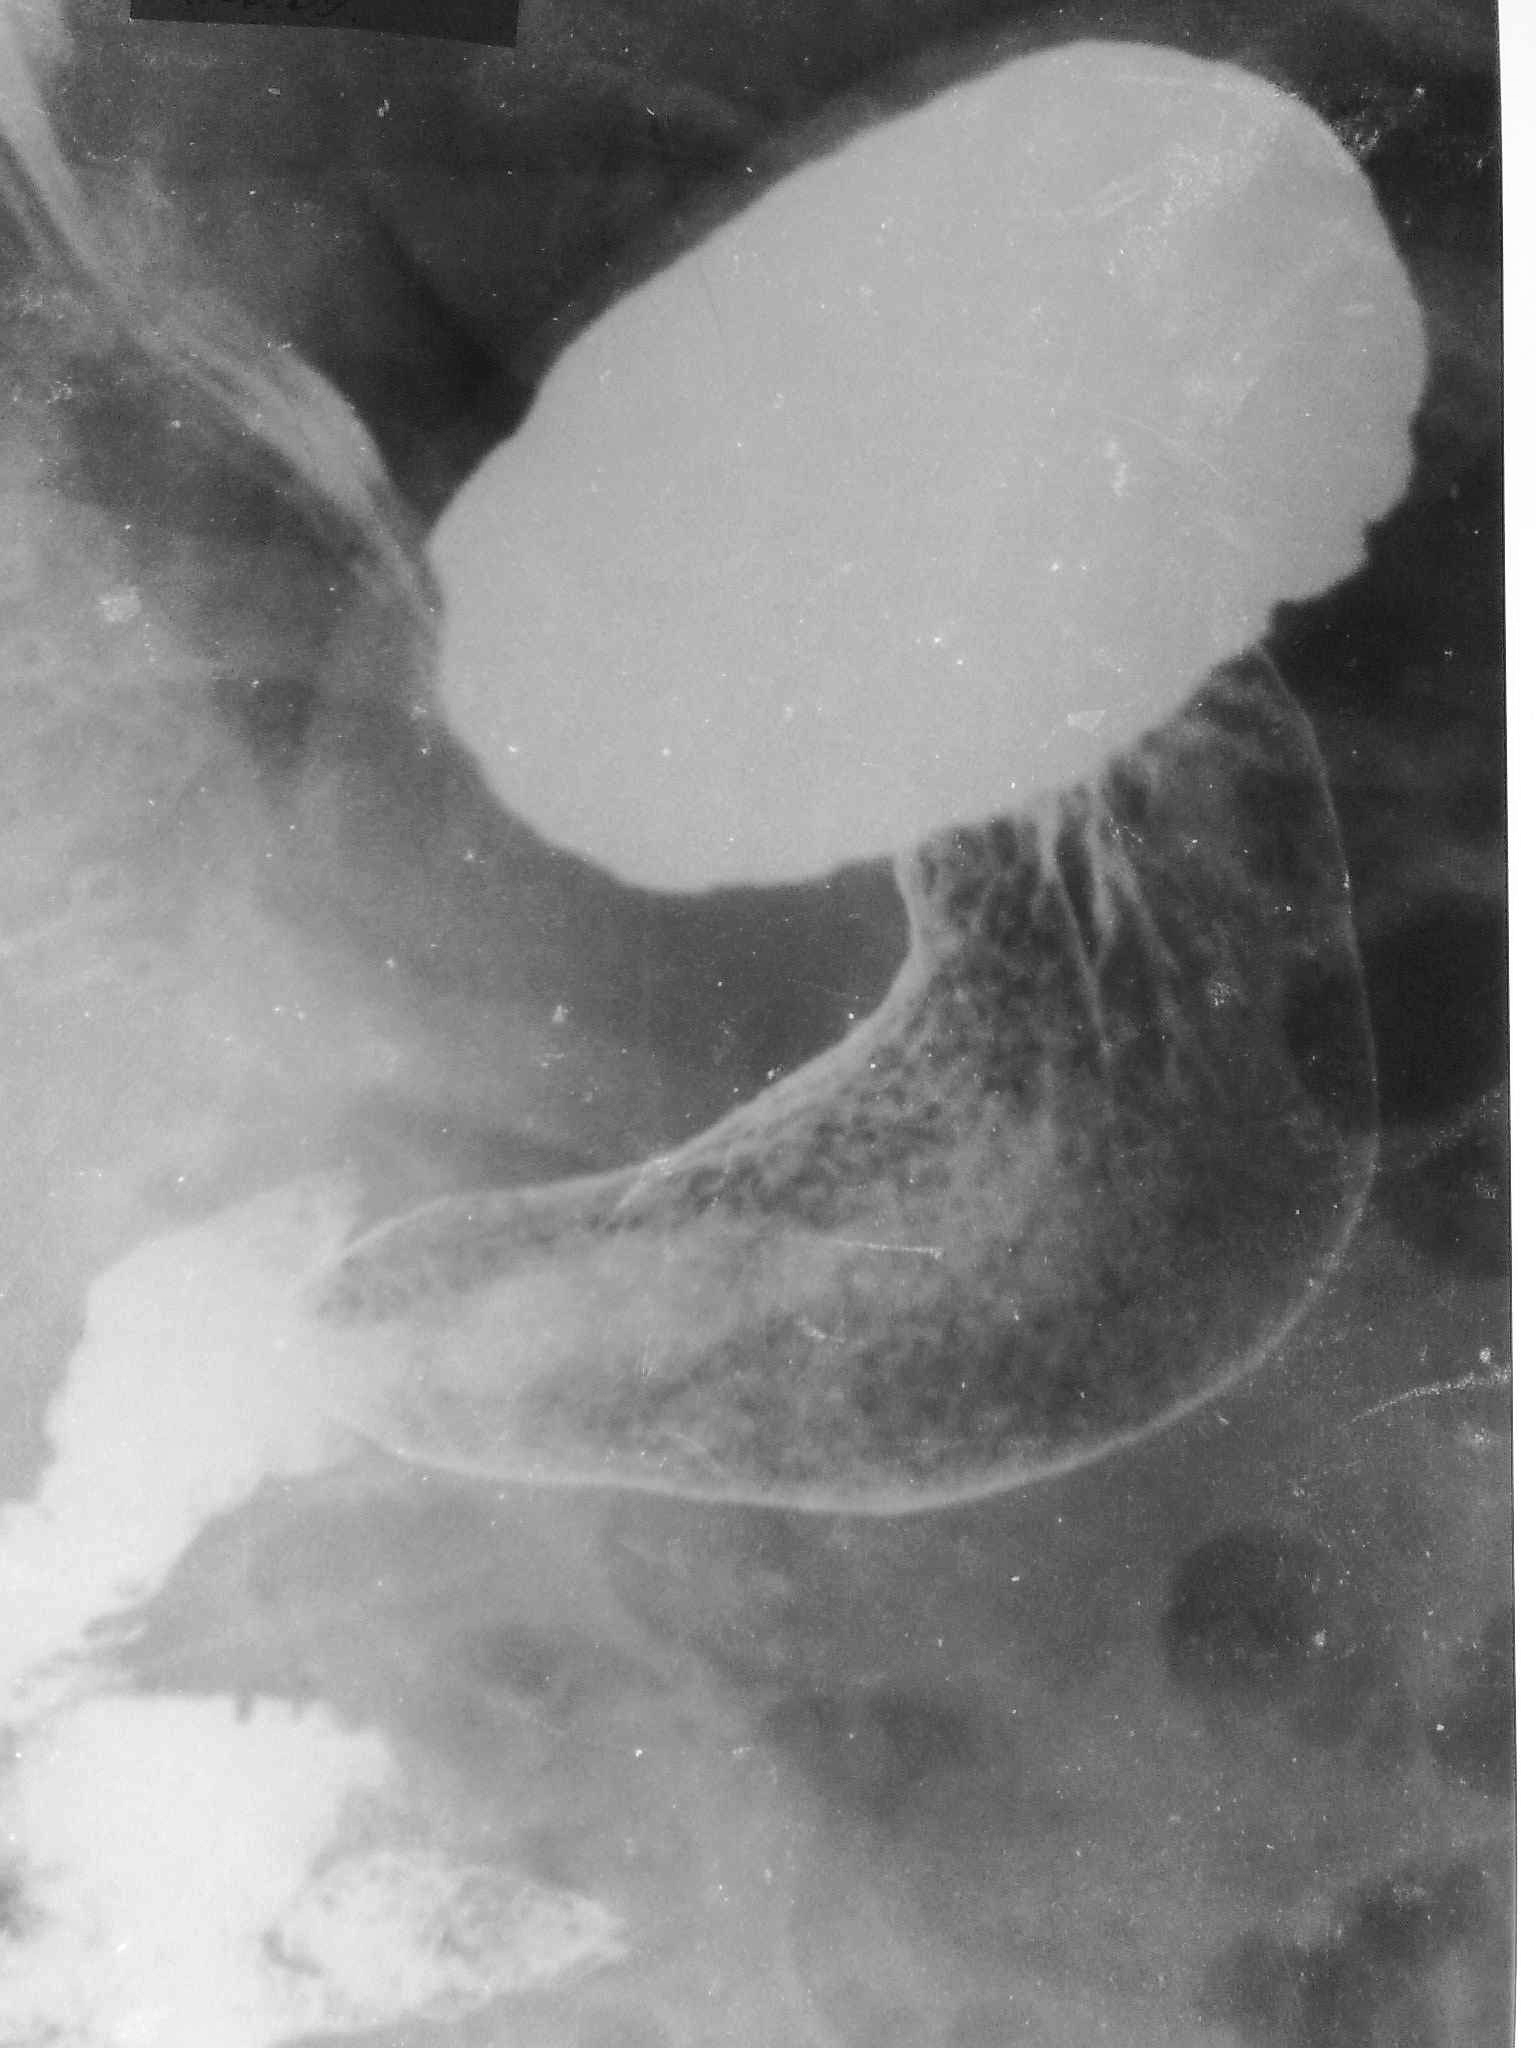 Гастрит антрального отдела желудка рентген